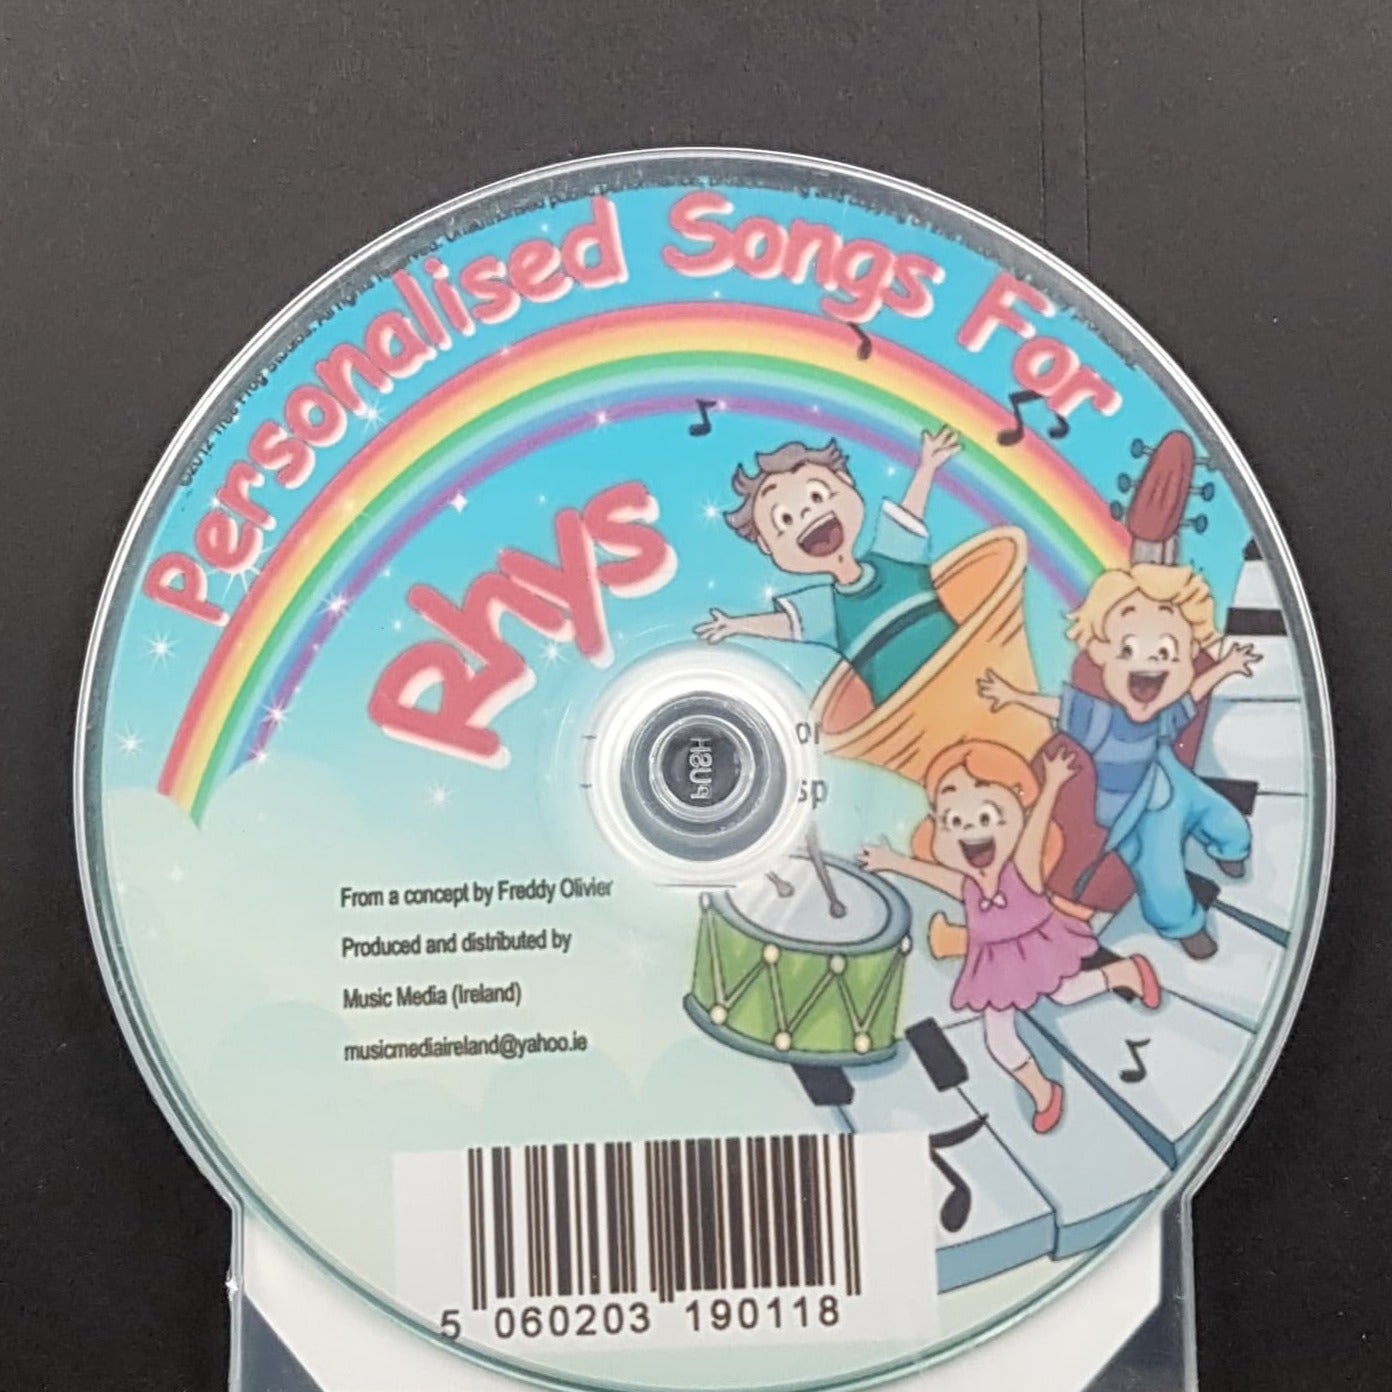 CD - Personalised Children's Songs / Rhys